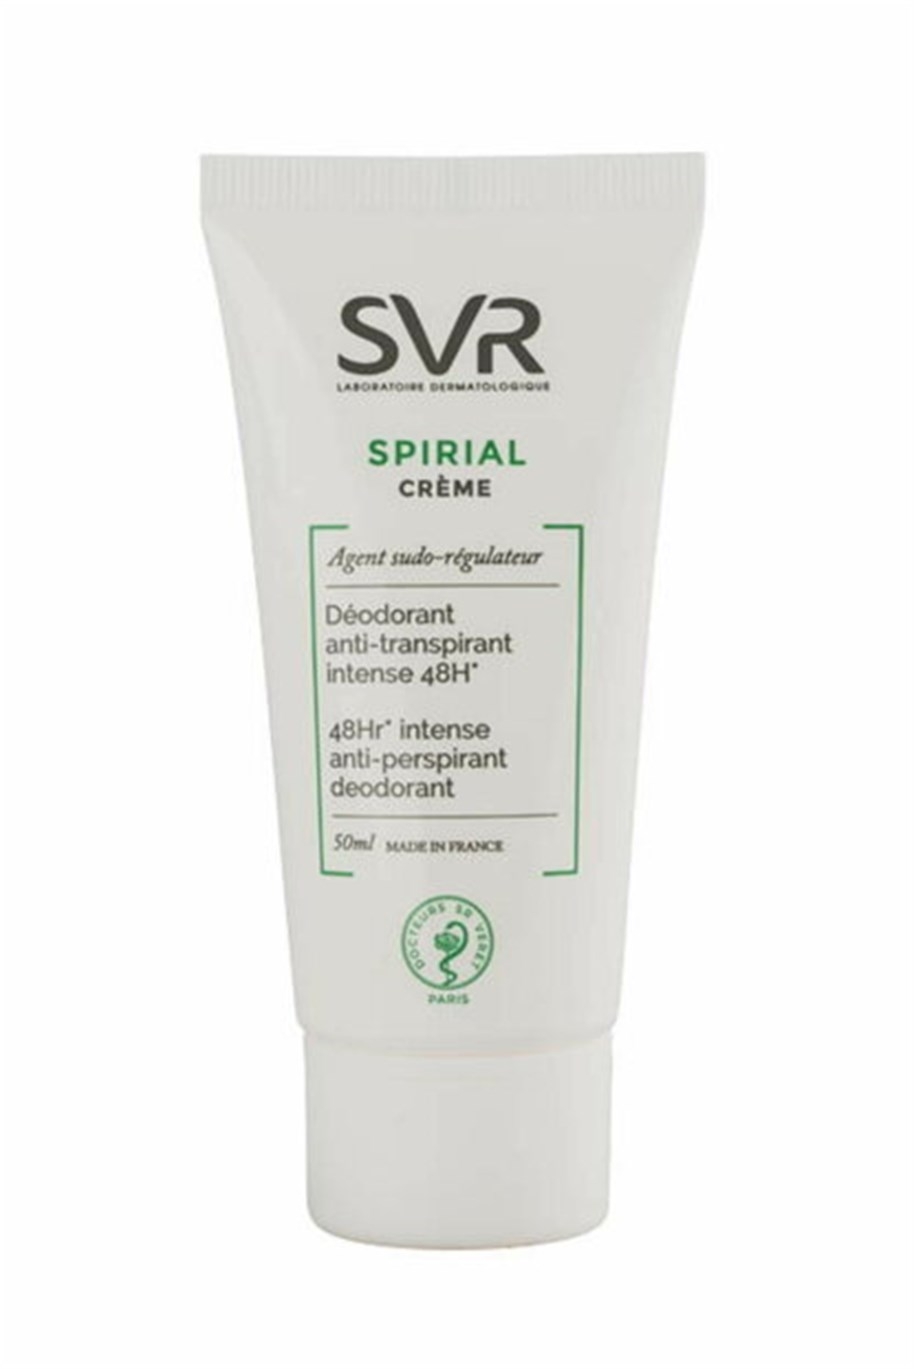 Svr Spirial Deodorant Anti-Perspiriant Cream 50ml - 1